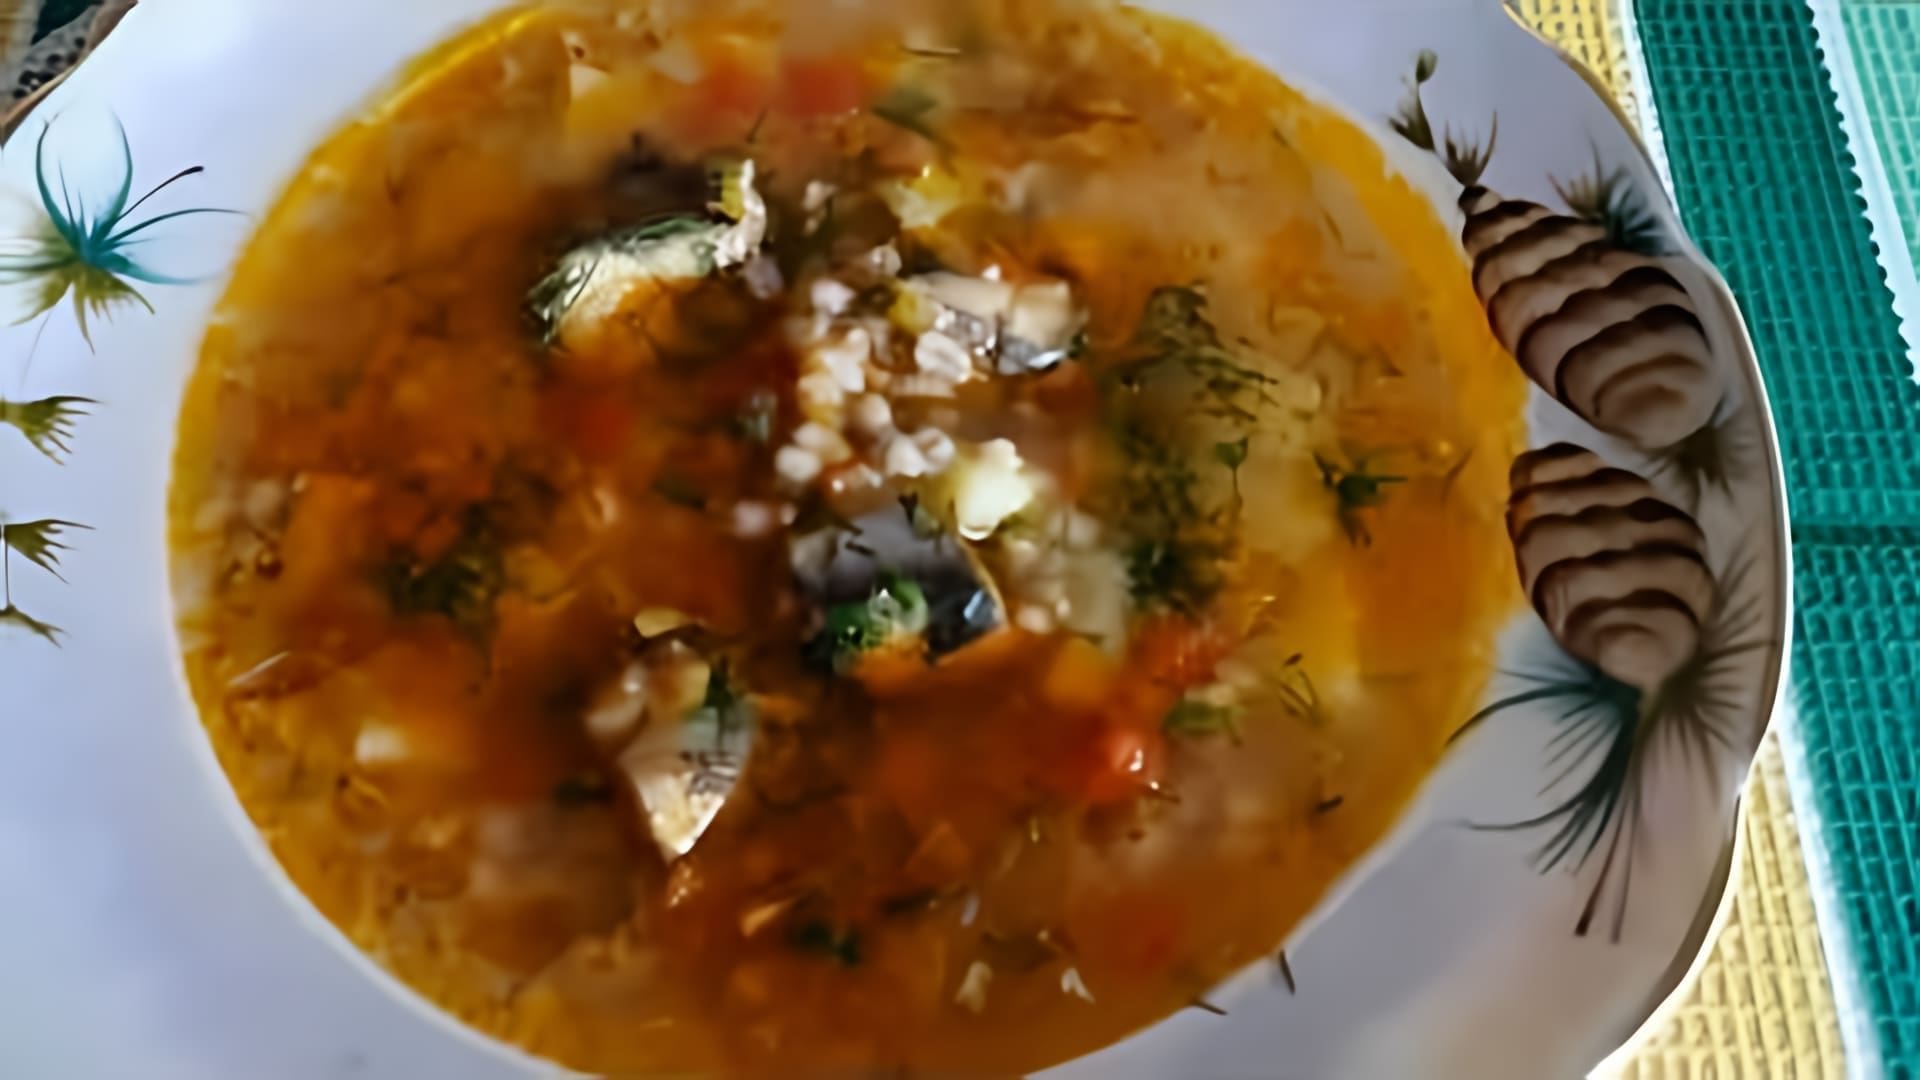 В этом видео демонстрируется процесс приготовления супа с рыбными консервами и перловкой